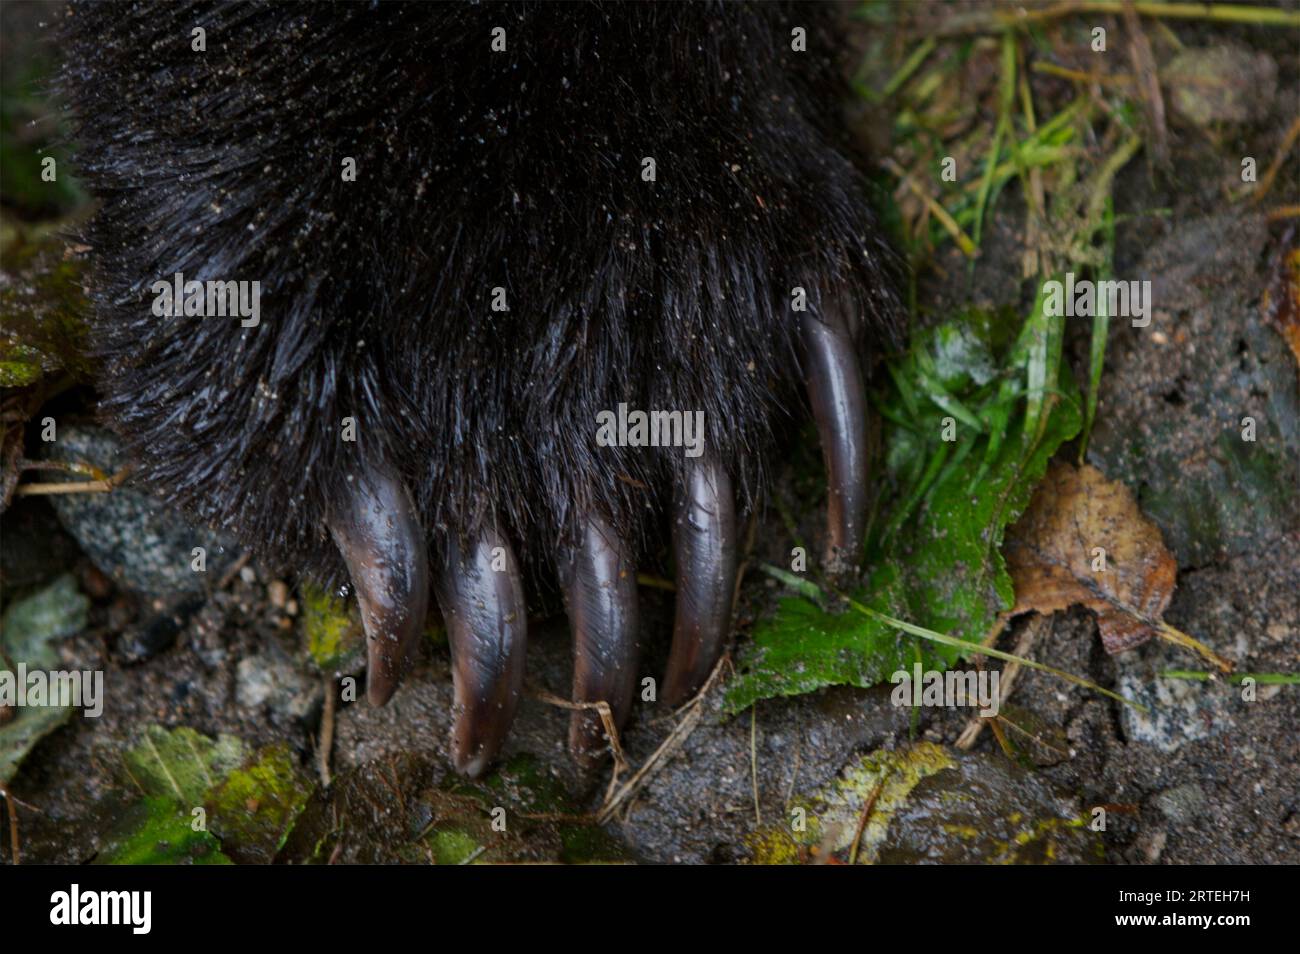 Primo piano dei lunghi artigli sulla zampa di un orso bruno o grizzly (Ursus arctos horribilis) sul fiume Unuk in Alaska, Stati Uniti Foto Stock